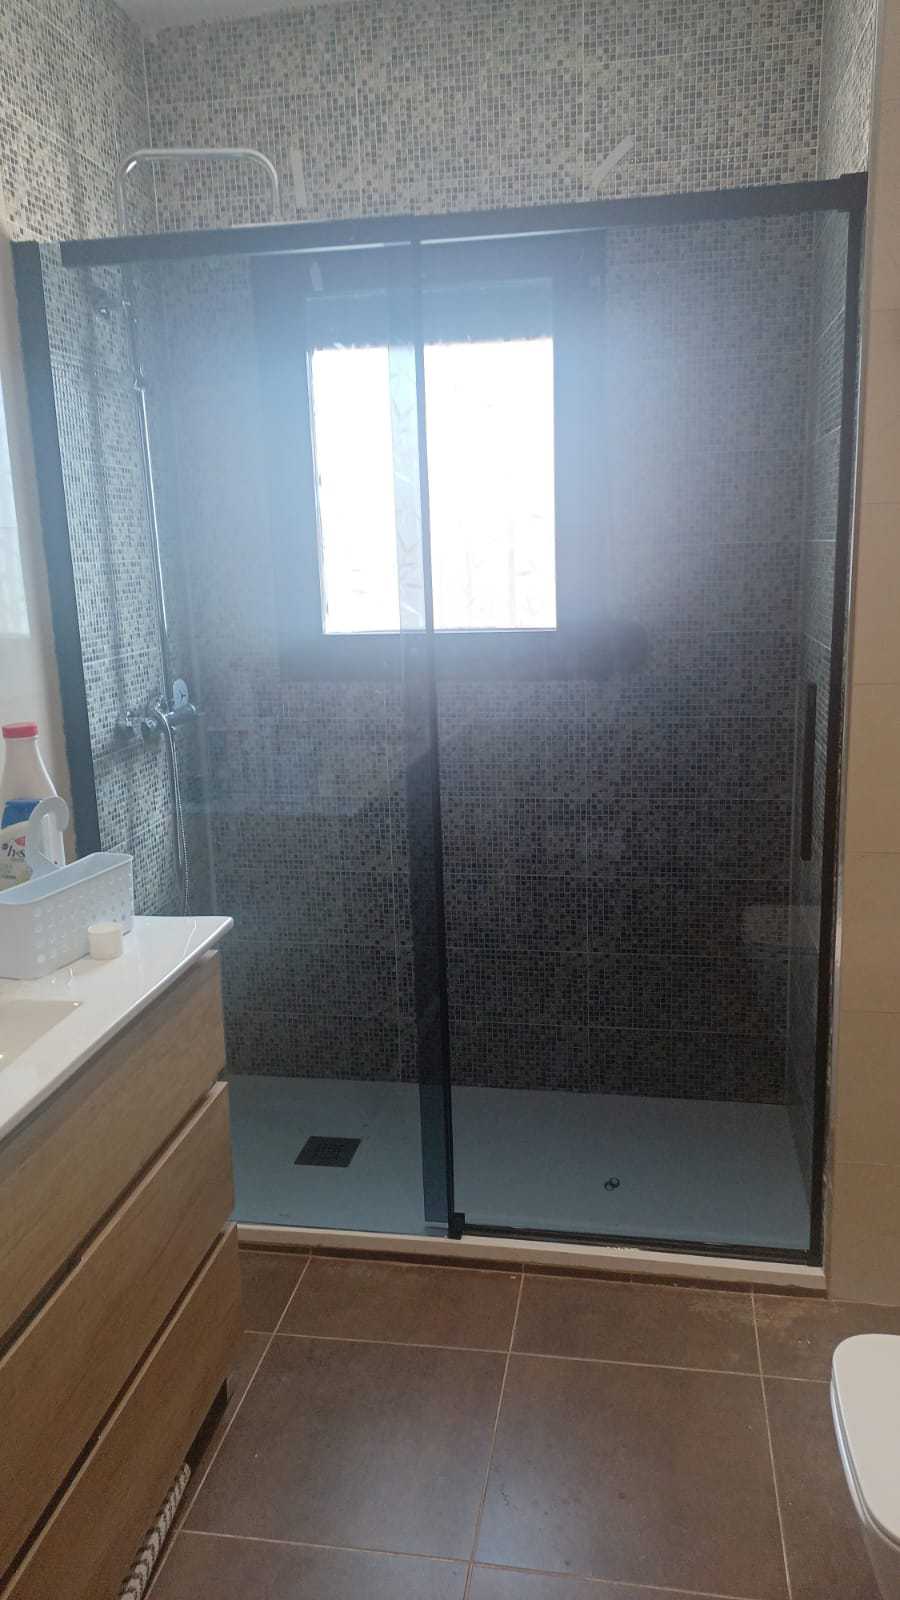 Vierteaguas inferior para puerta de mampara y baño con vidrio de 5, 6 y 8 mm